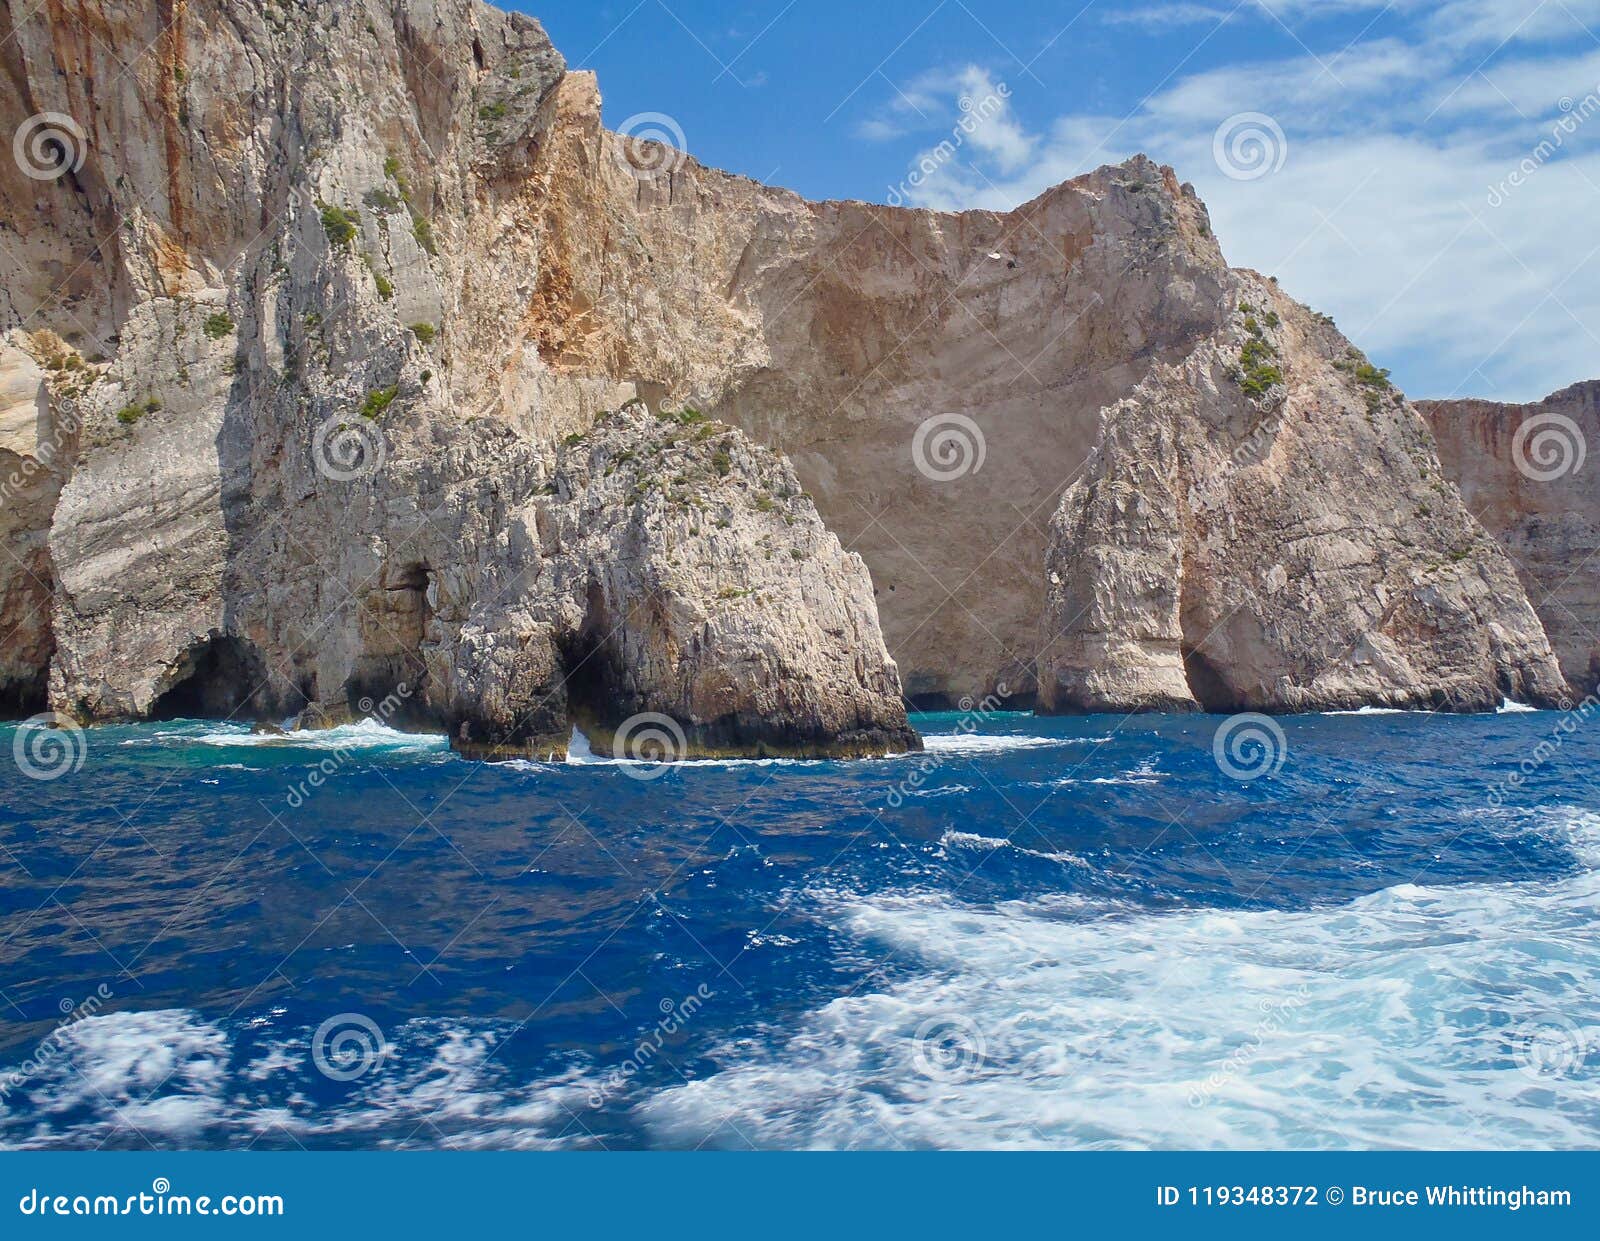 坚固性海岸线和洞，扎金索斯州希腊海岛，希腊. 与洞沿水线，扎金索斯州，一个爱奥尼亚人希腊海岛，希腊的坚固性海岸线峭壁，有干净的大海的